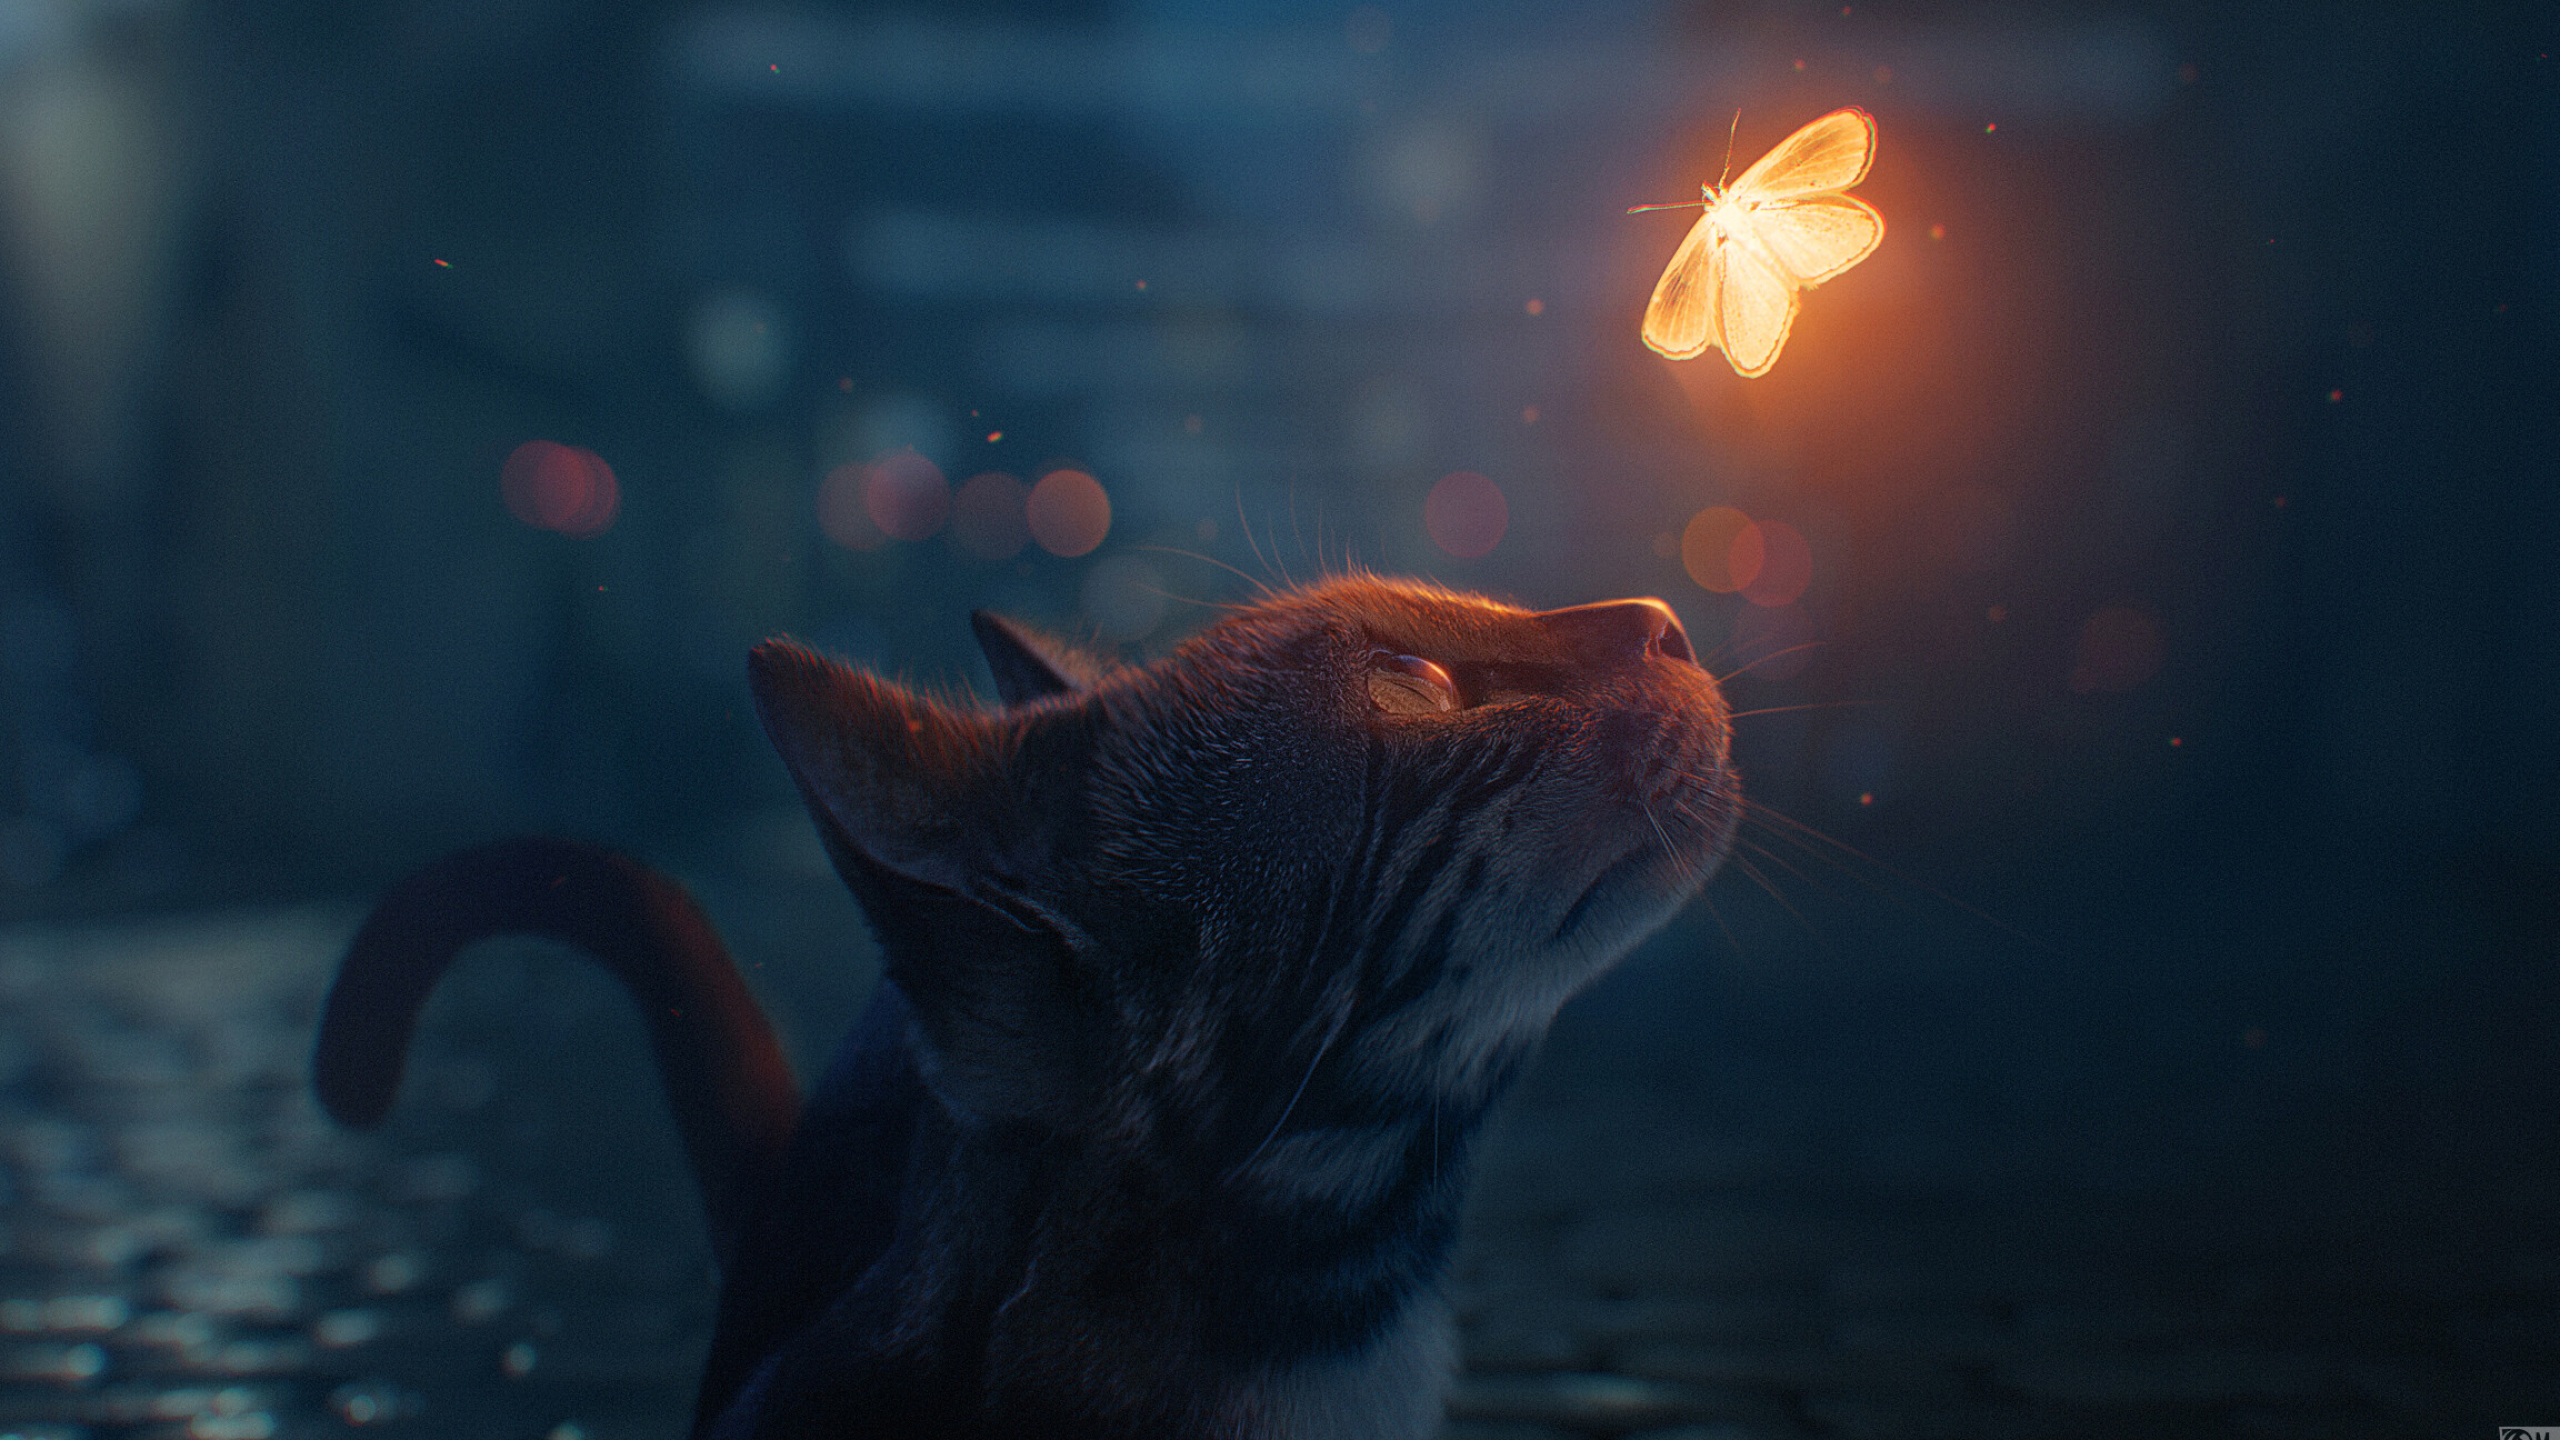 Cat, Butterfly encounter, Digital art wonder, Mesmerizing resolution, 2560x1440 HD Desktop